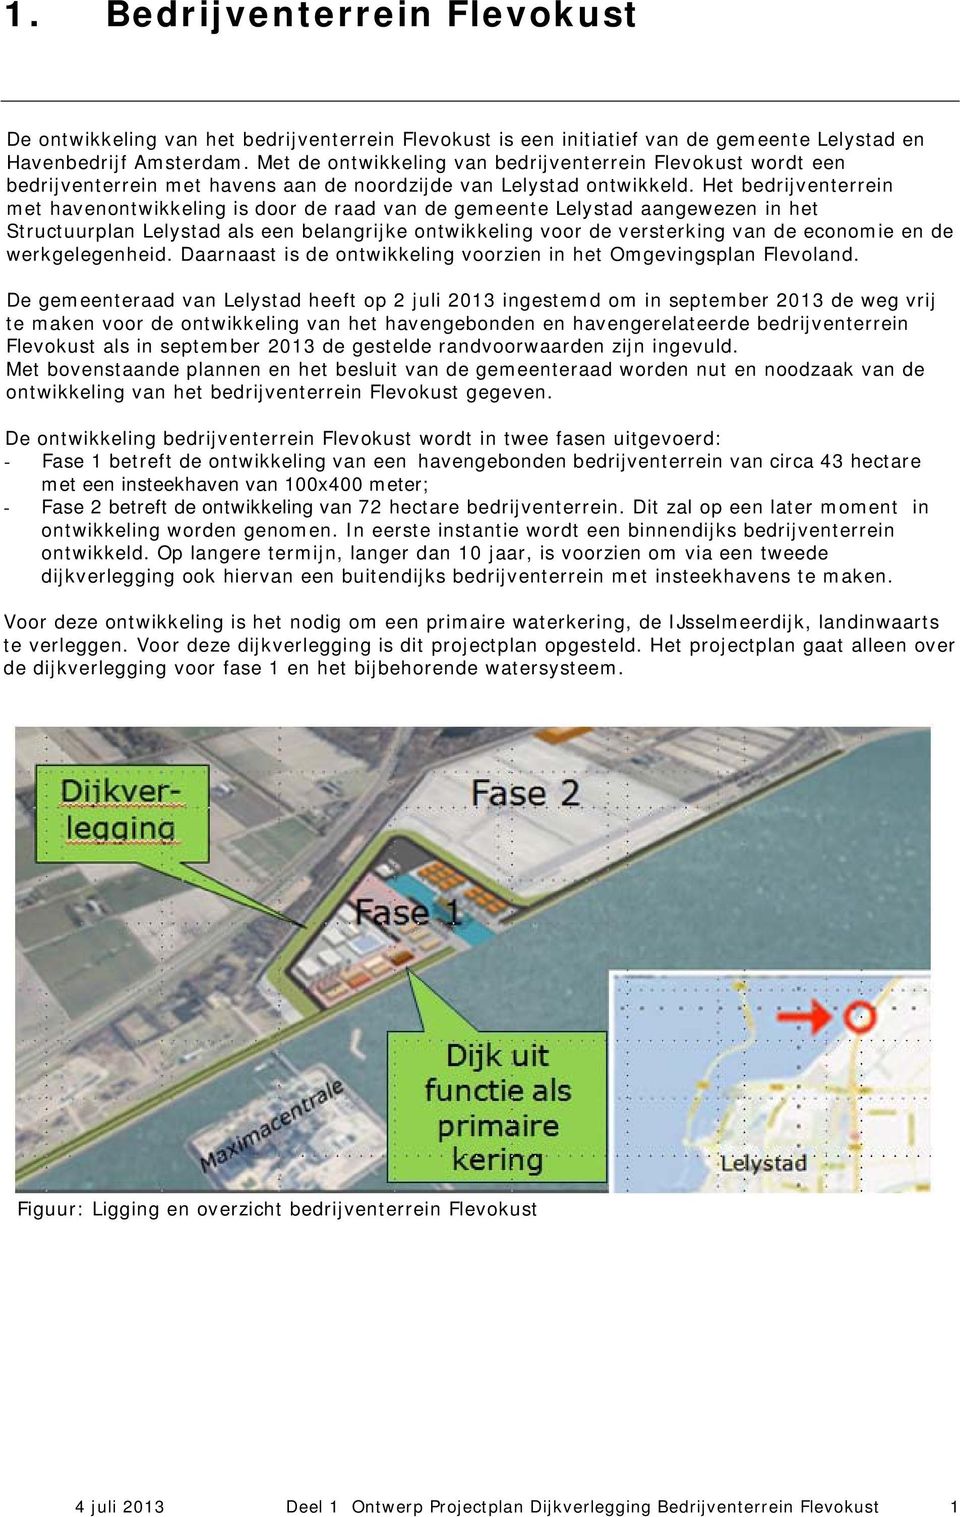 Het bedrijventerrein met havenontwikkeling is door de raad van de gemeente Lelystad aangewezen in het Structuurplan Lelystad als een belangrijke ontwikkeling voor de versterking van de economie en de